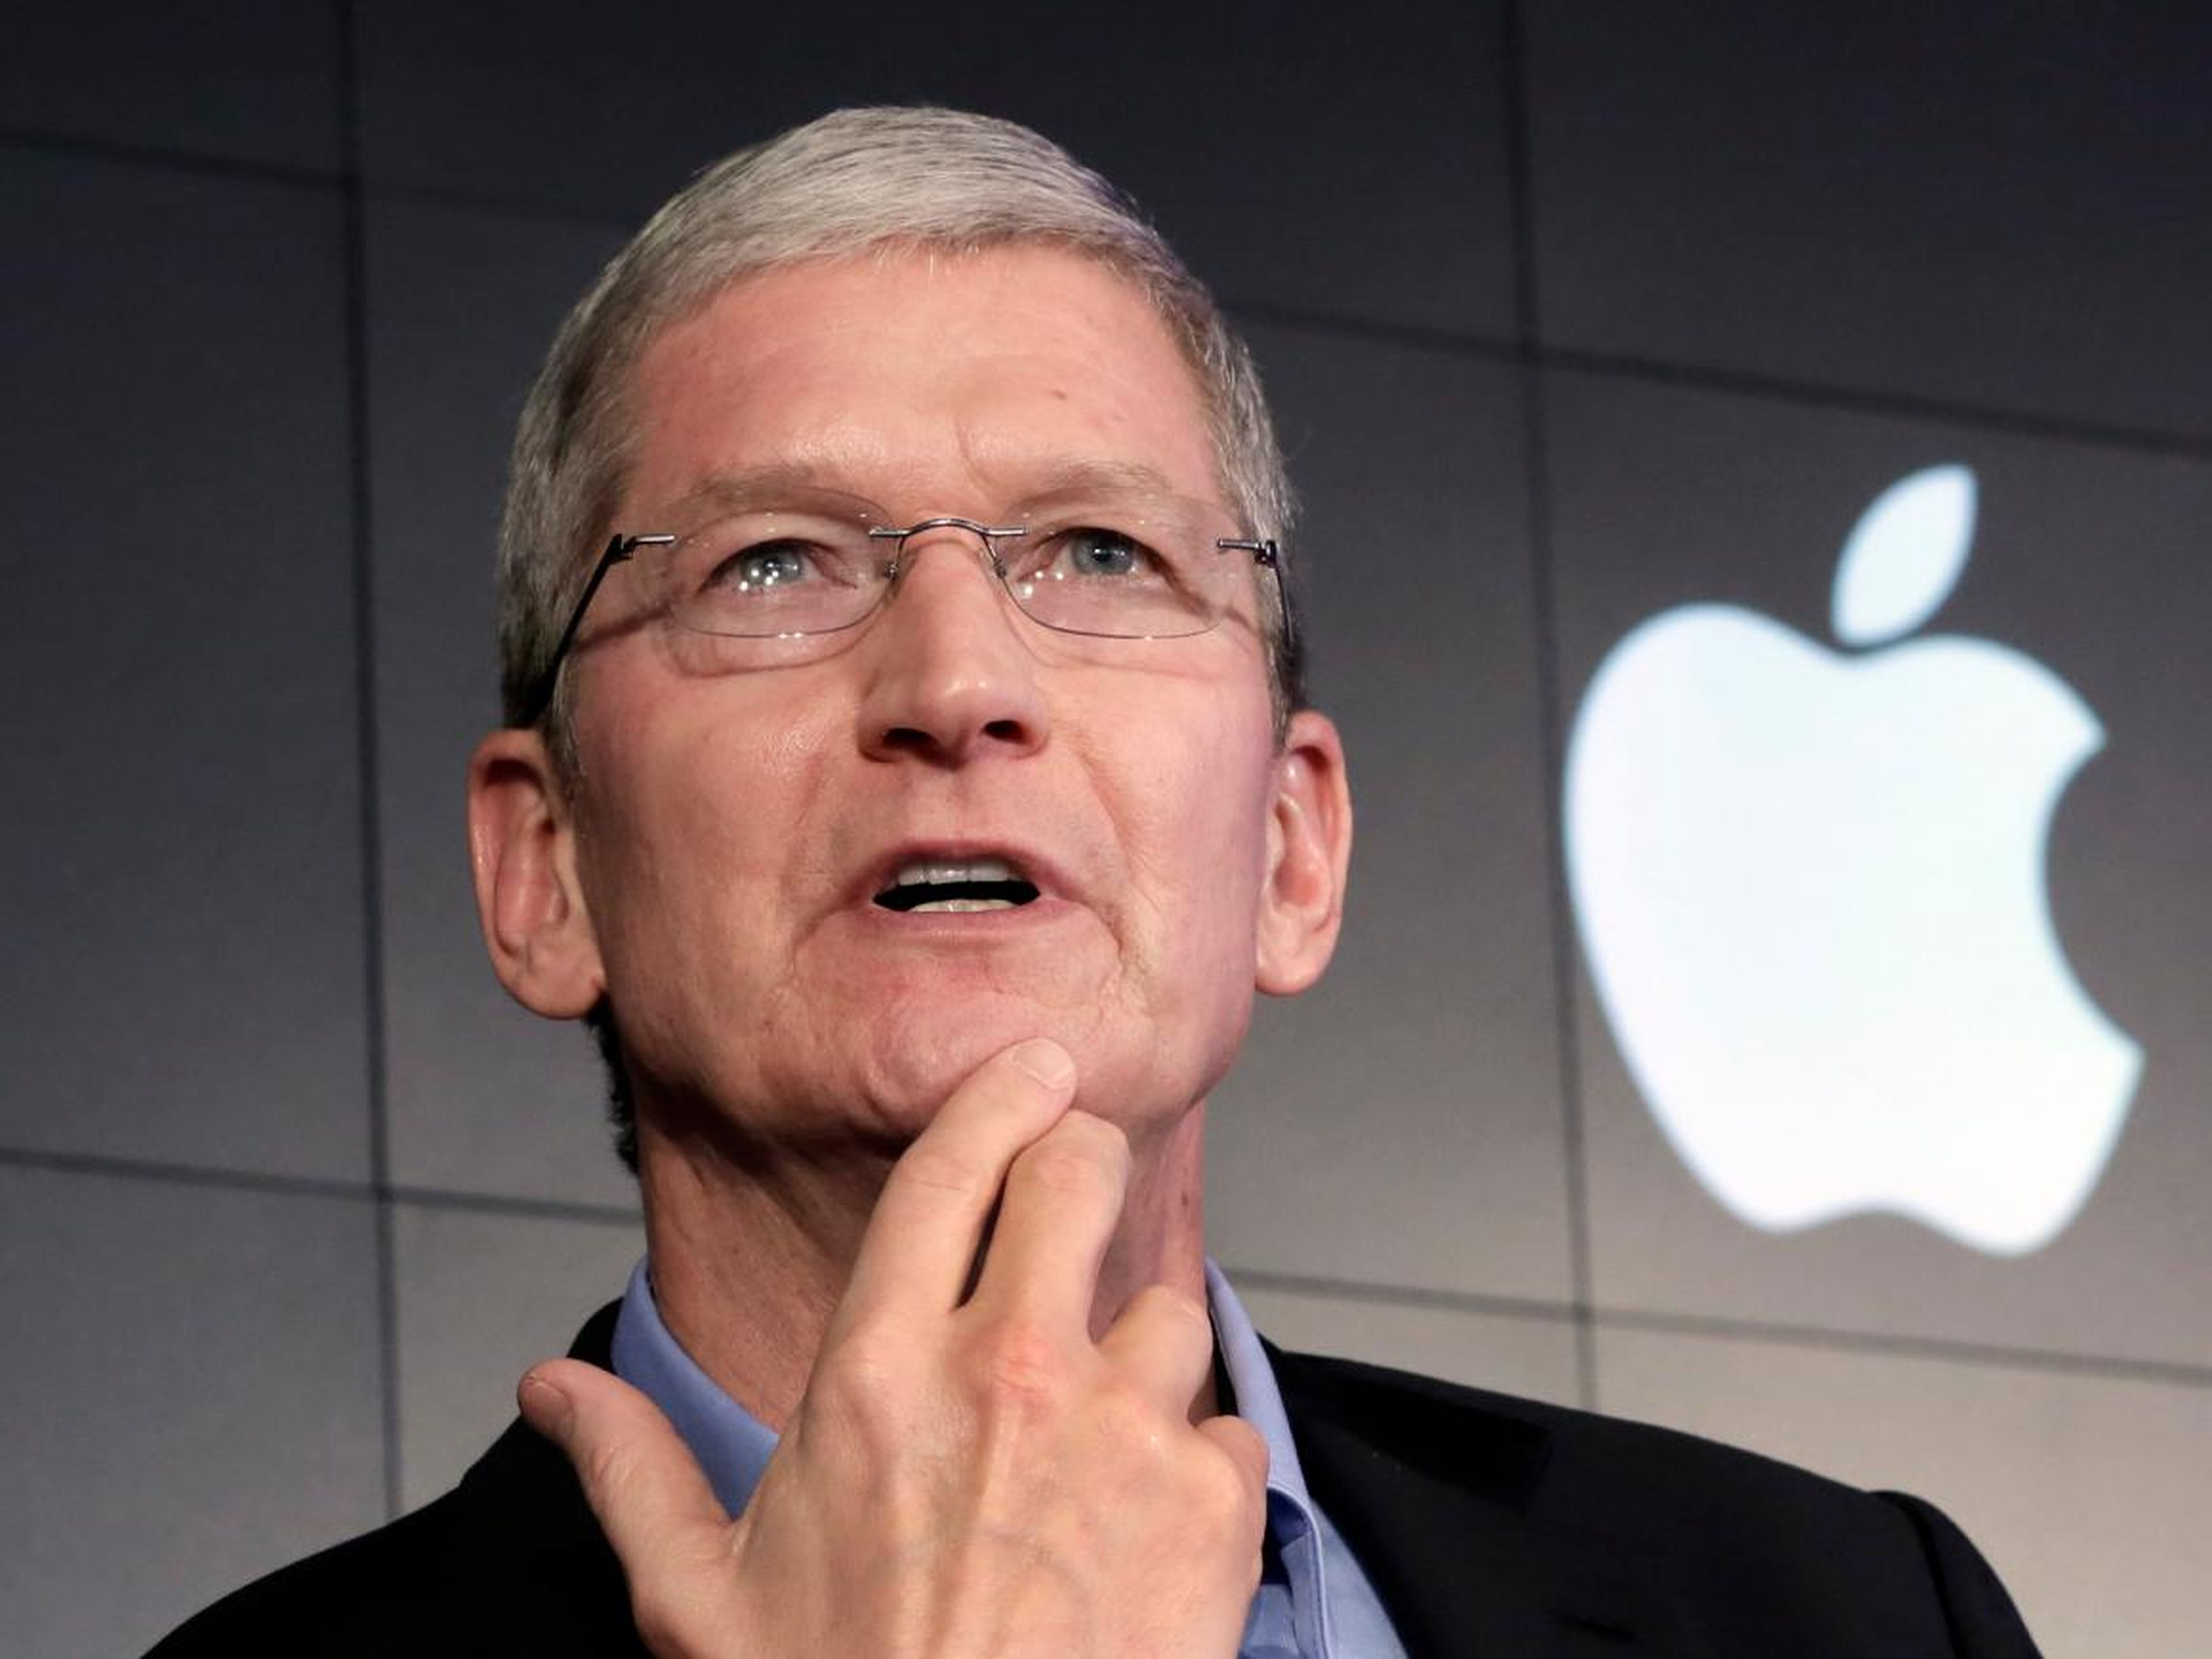 El CEO de Apple,Tim Cook, sigue una rutina que empieza levantándose a las 3:45 a.m.